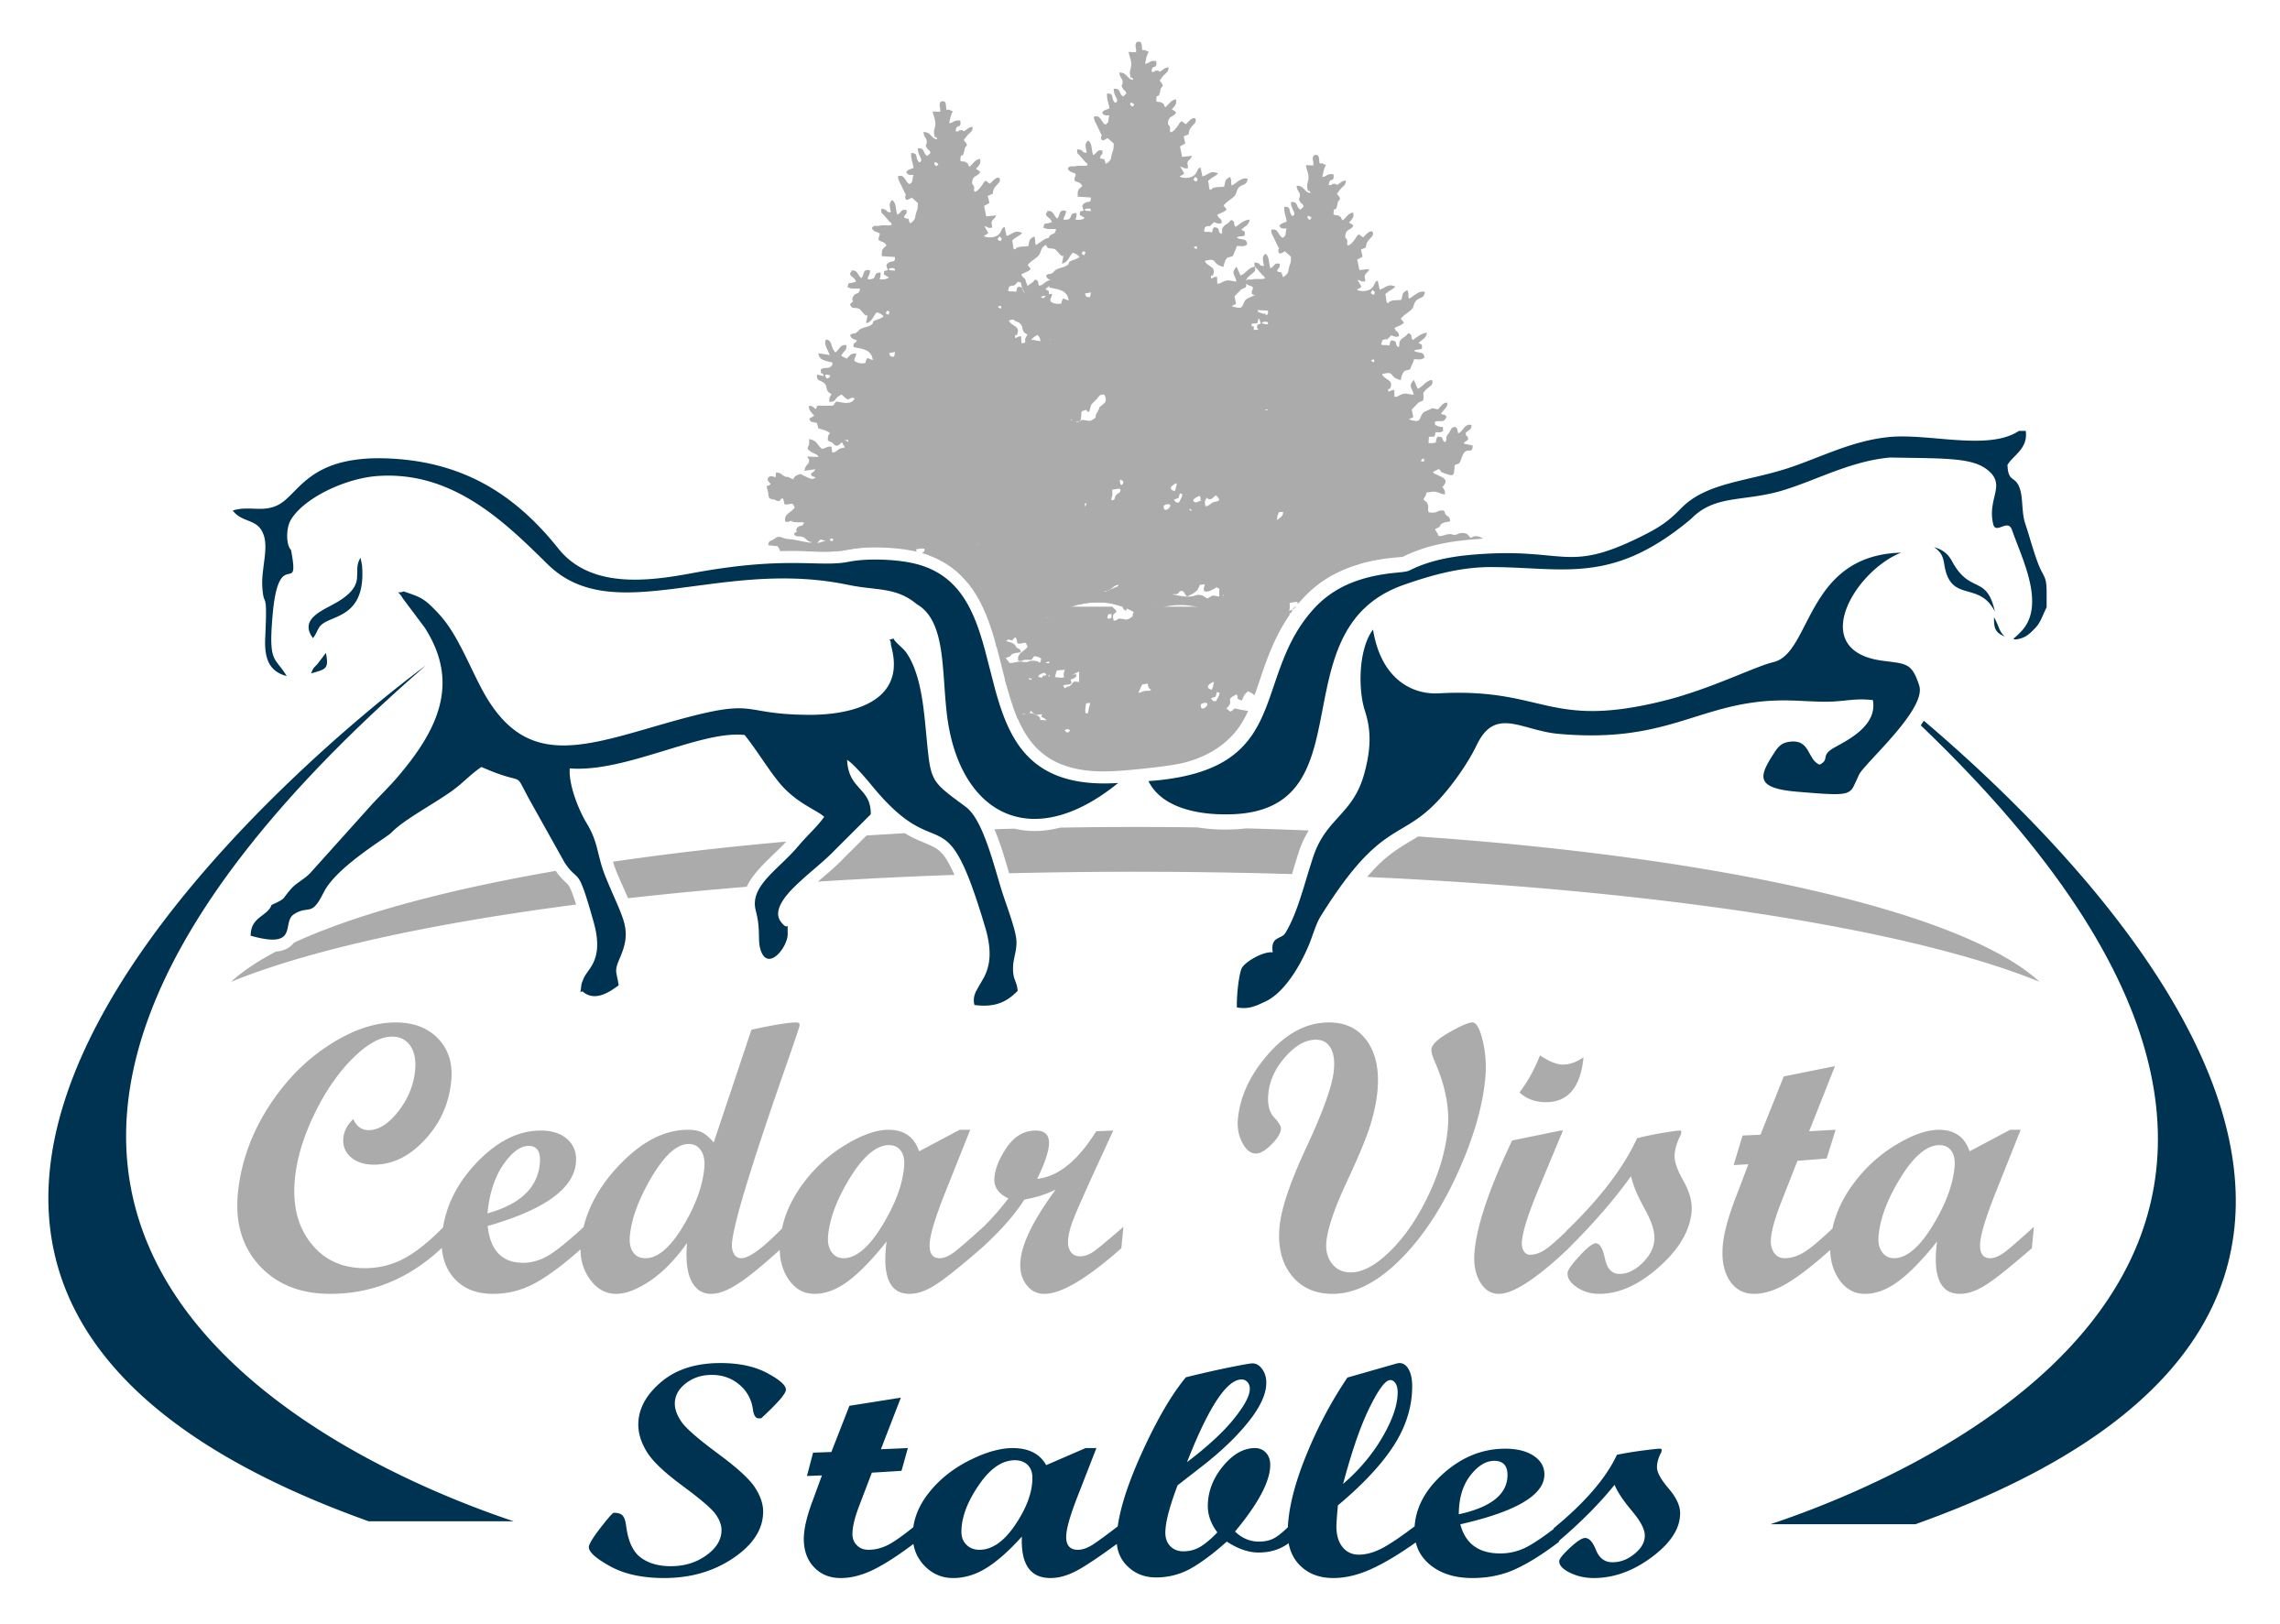 Cedar Vista Stables.jpg